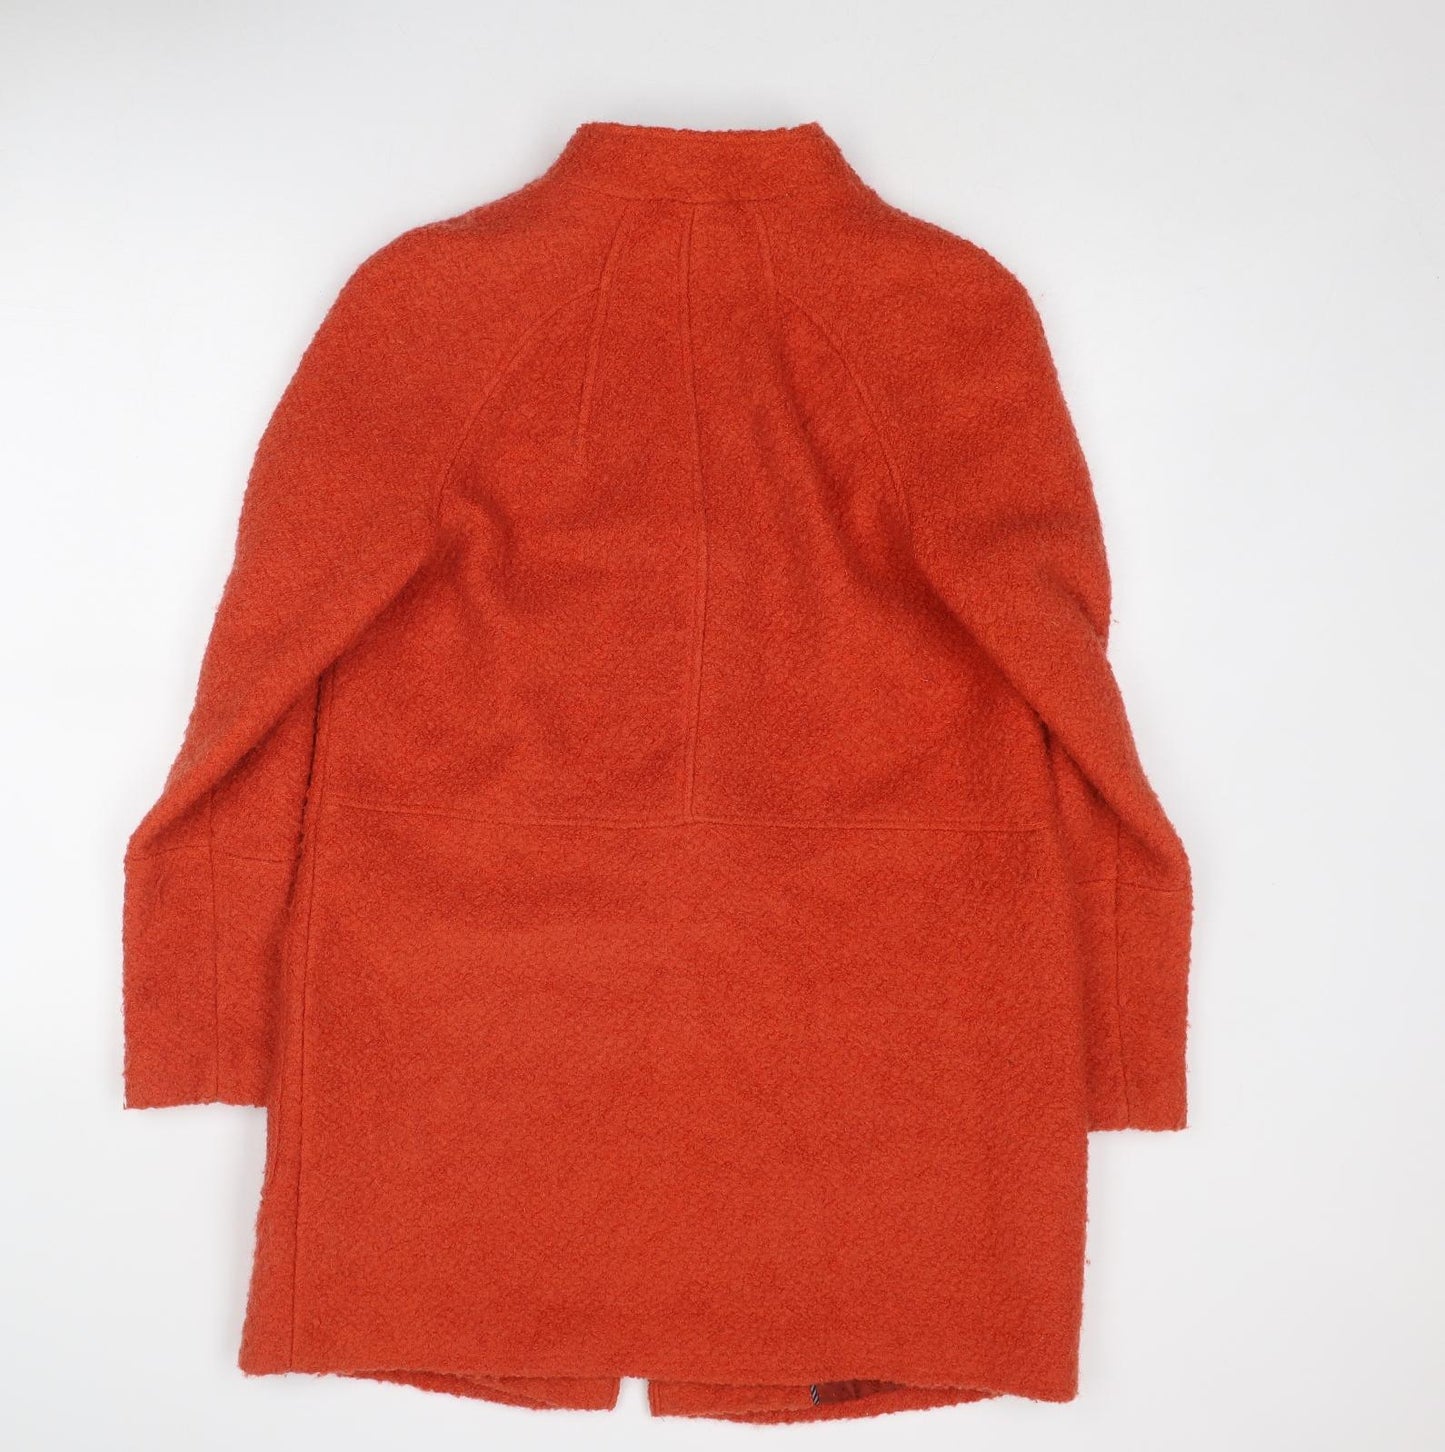 NEXT Womens Orange Overcoat Coat Size 12 Button